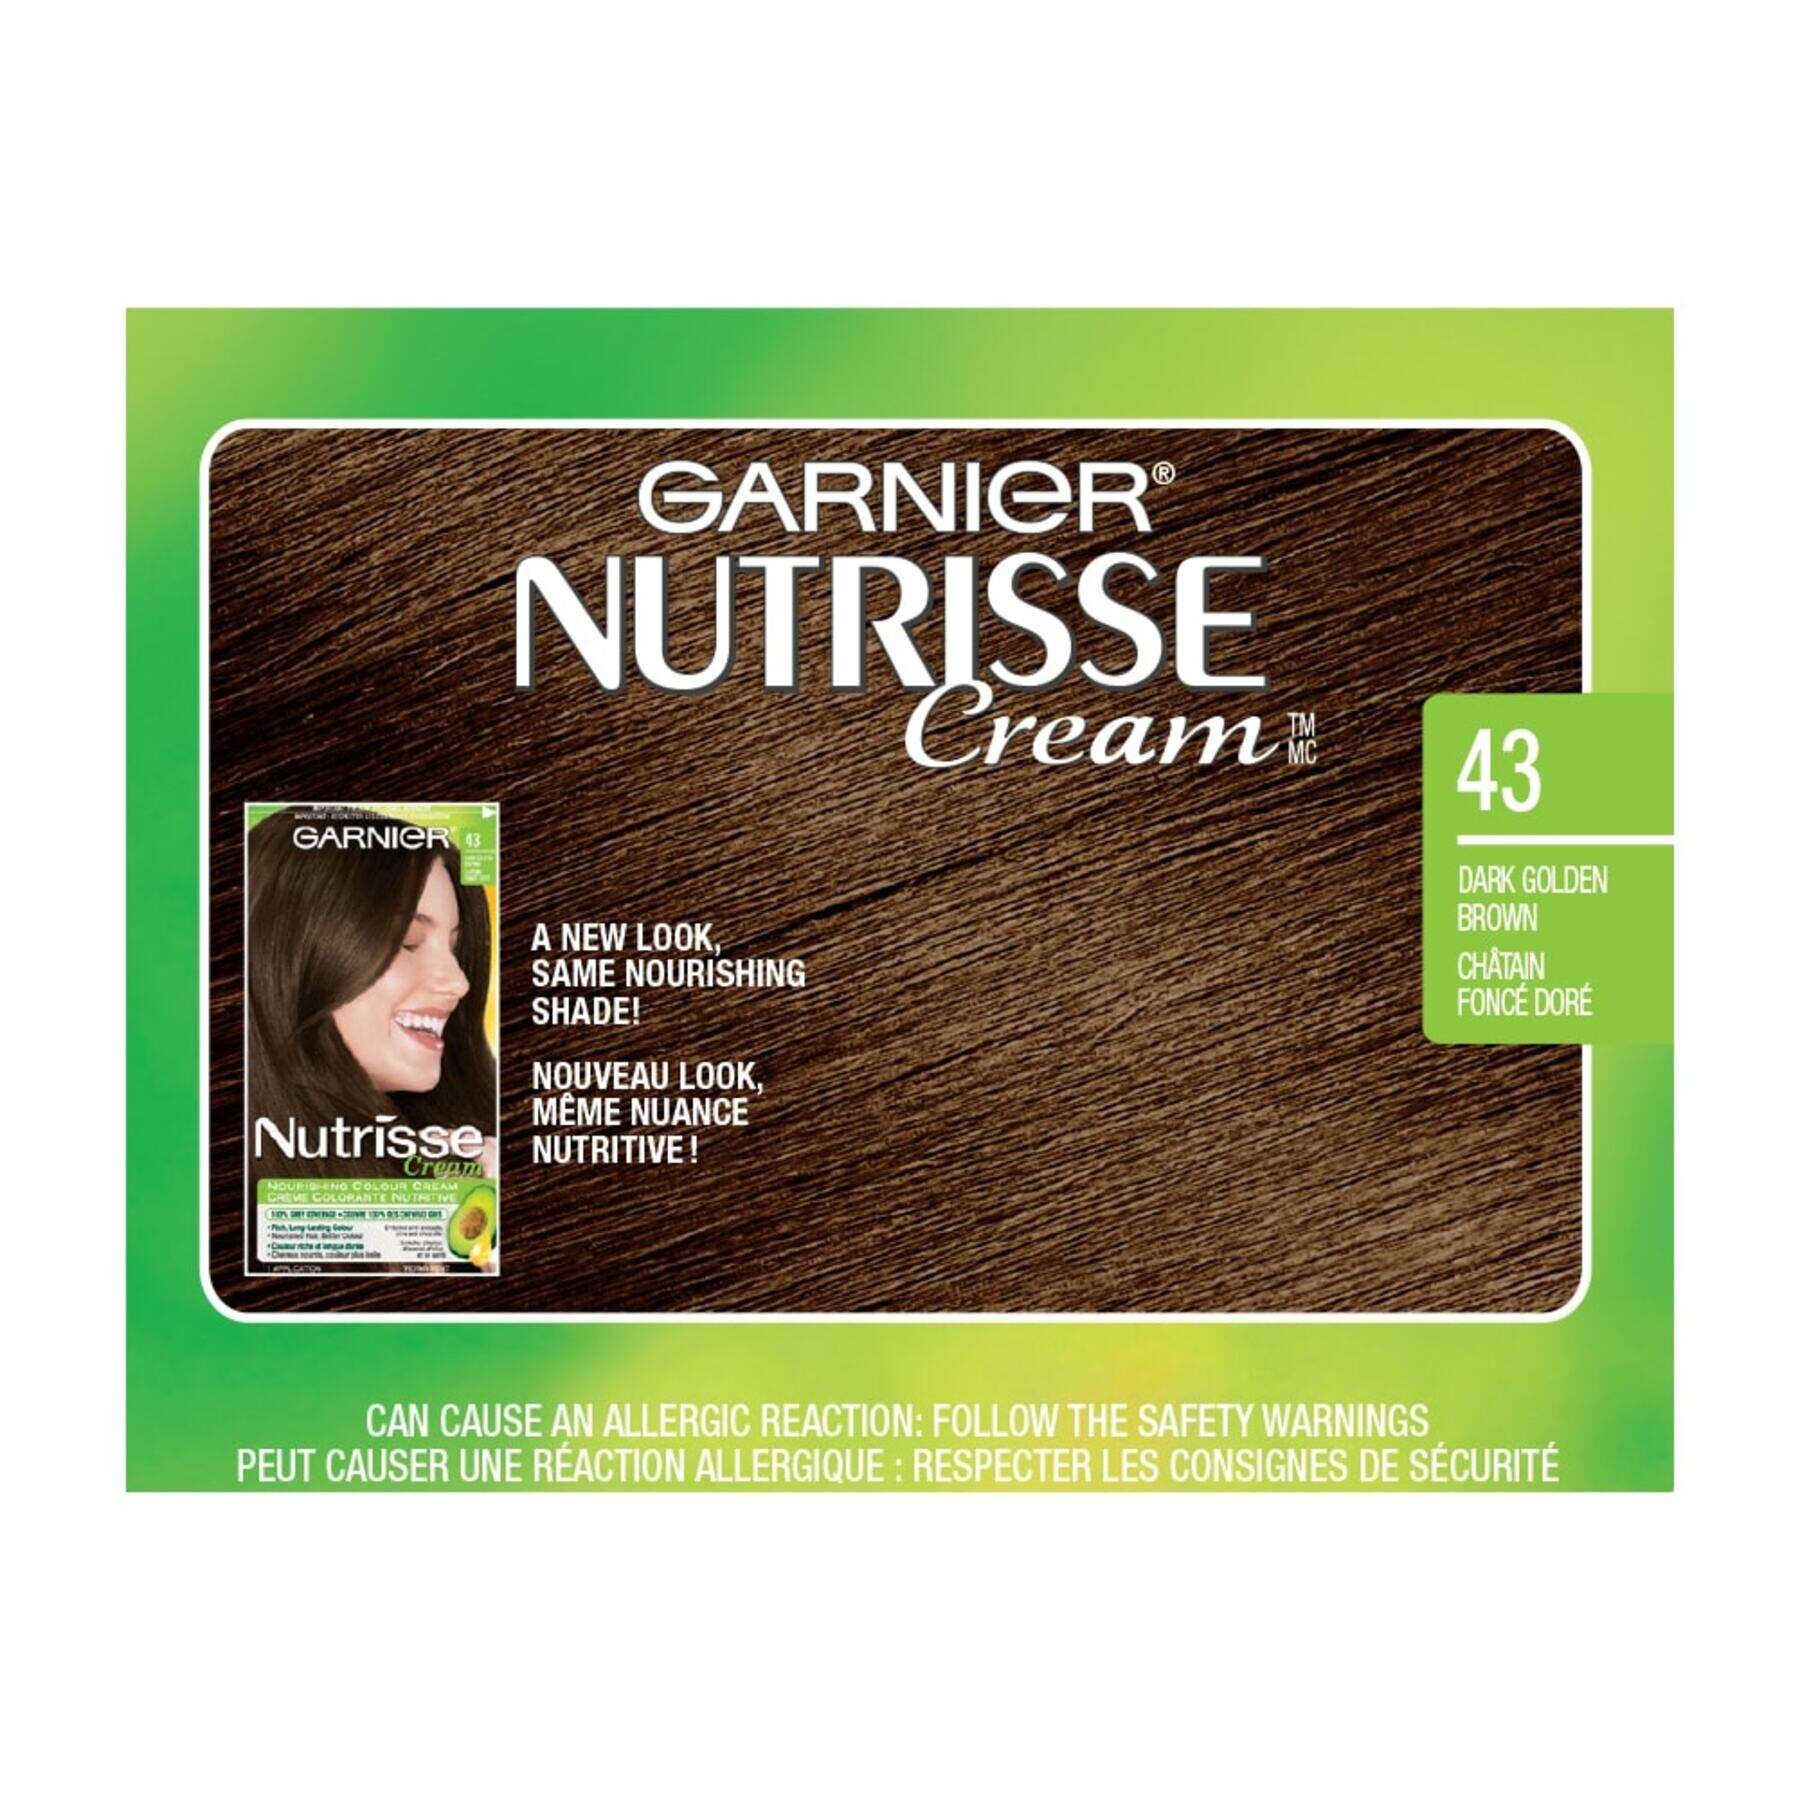 garnier hair dye nutrisse cream 43 dark golden brown 0770103447063 swatch